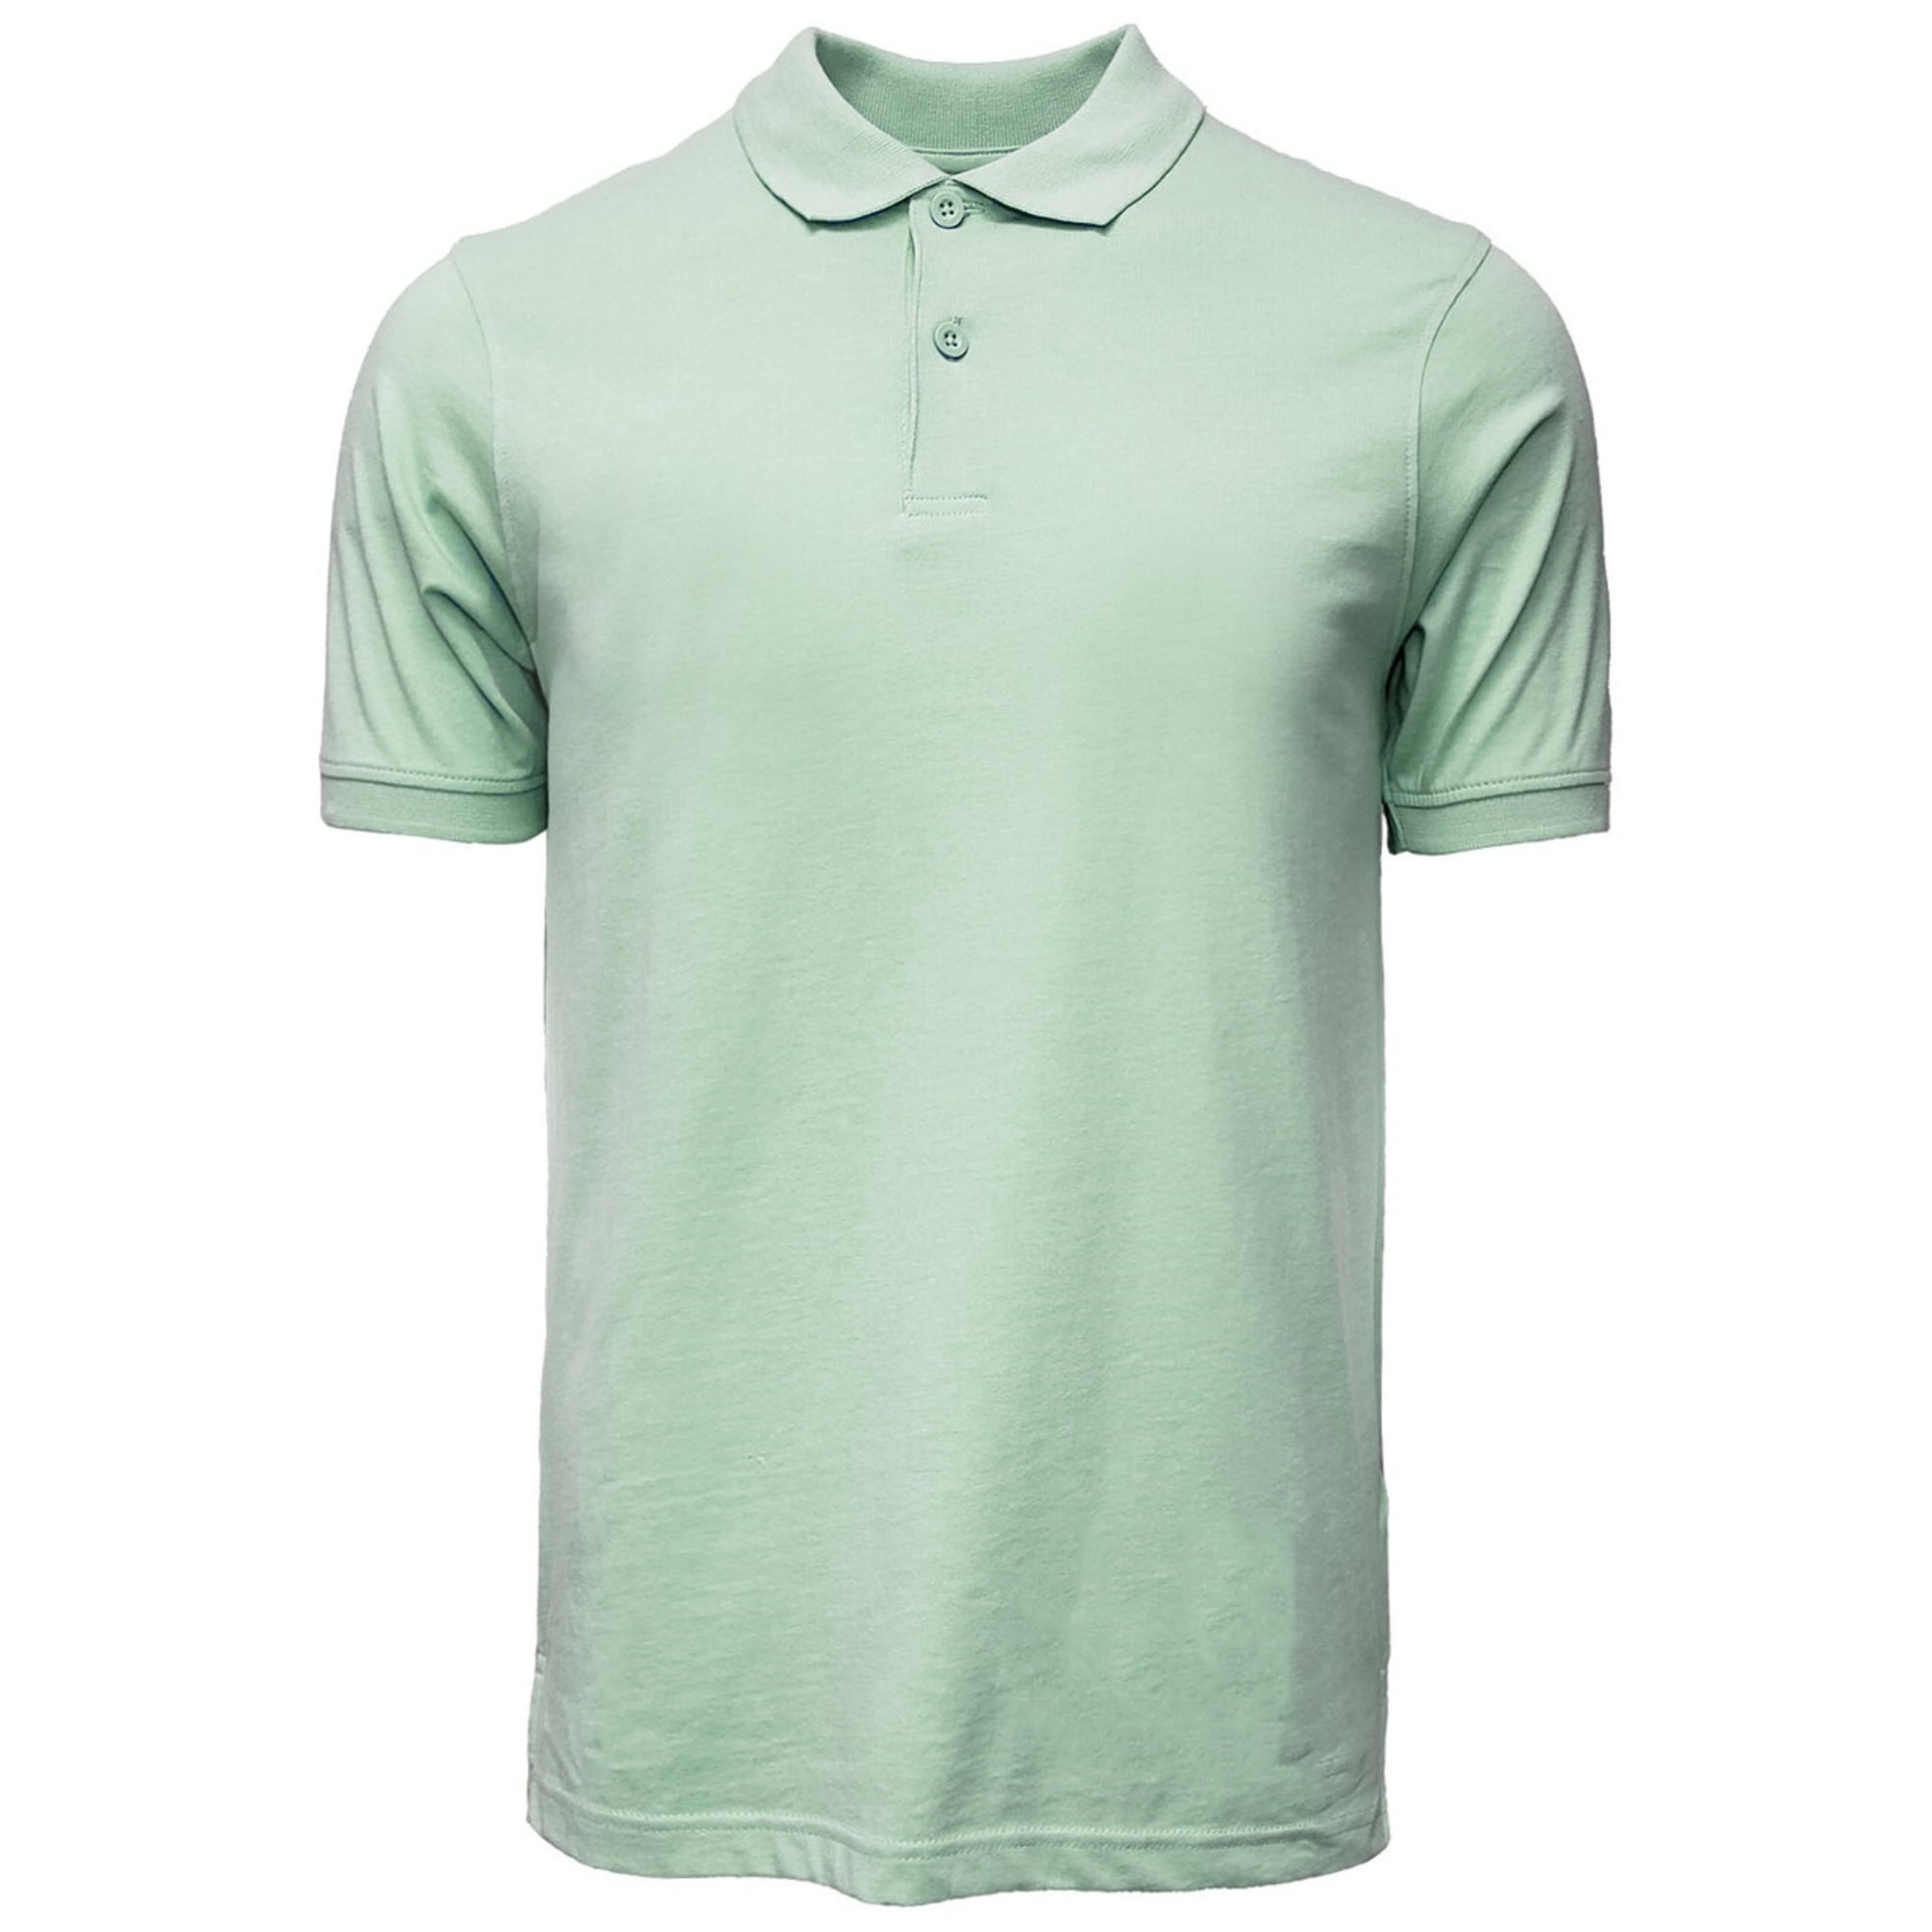 strijd Gietvorm Omzet Marquis Mint Green Slim Fit Jersey Polo Shirt - Ultra Soft Fabric -  Walmart.com